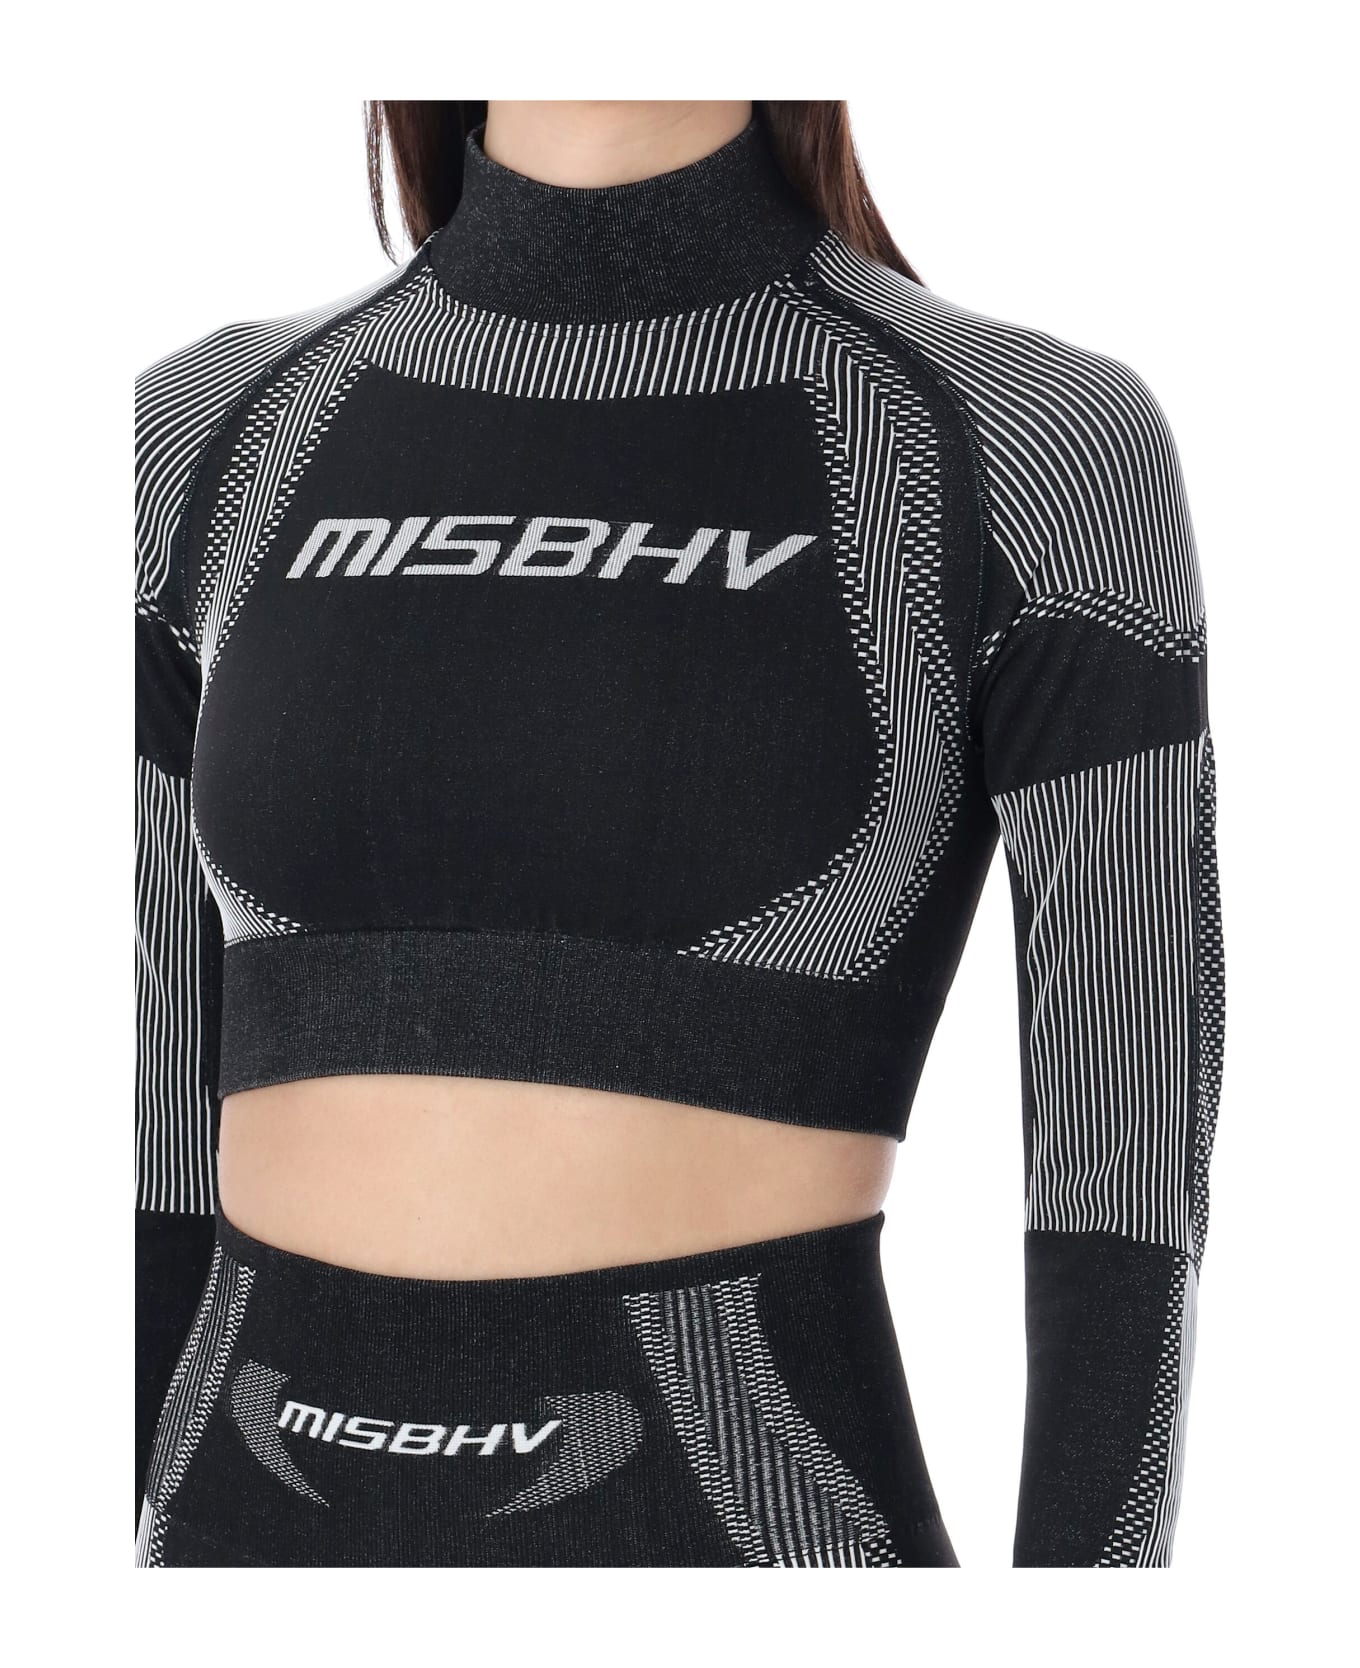 MISBHV Sport Cropped Top - BLACK